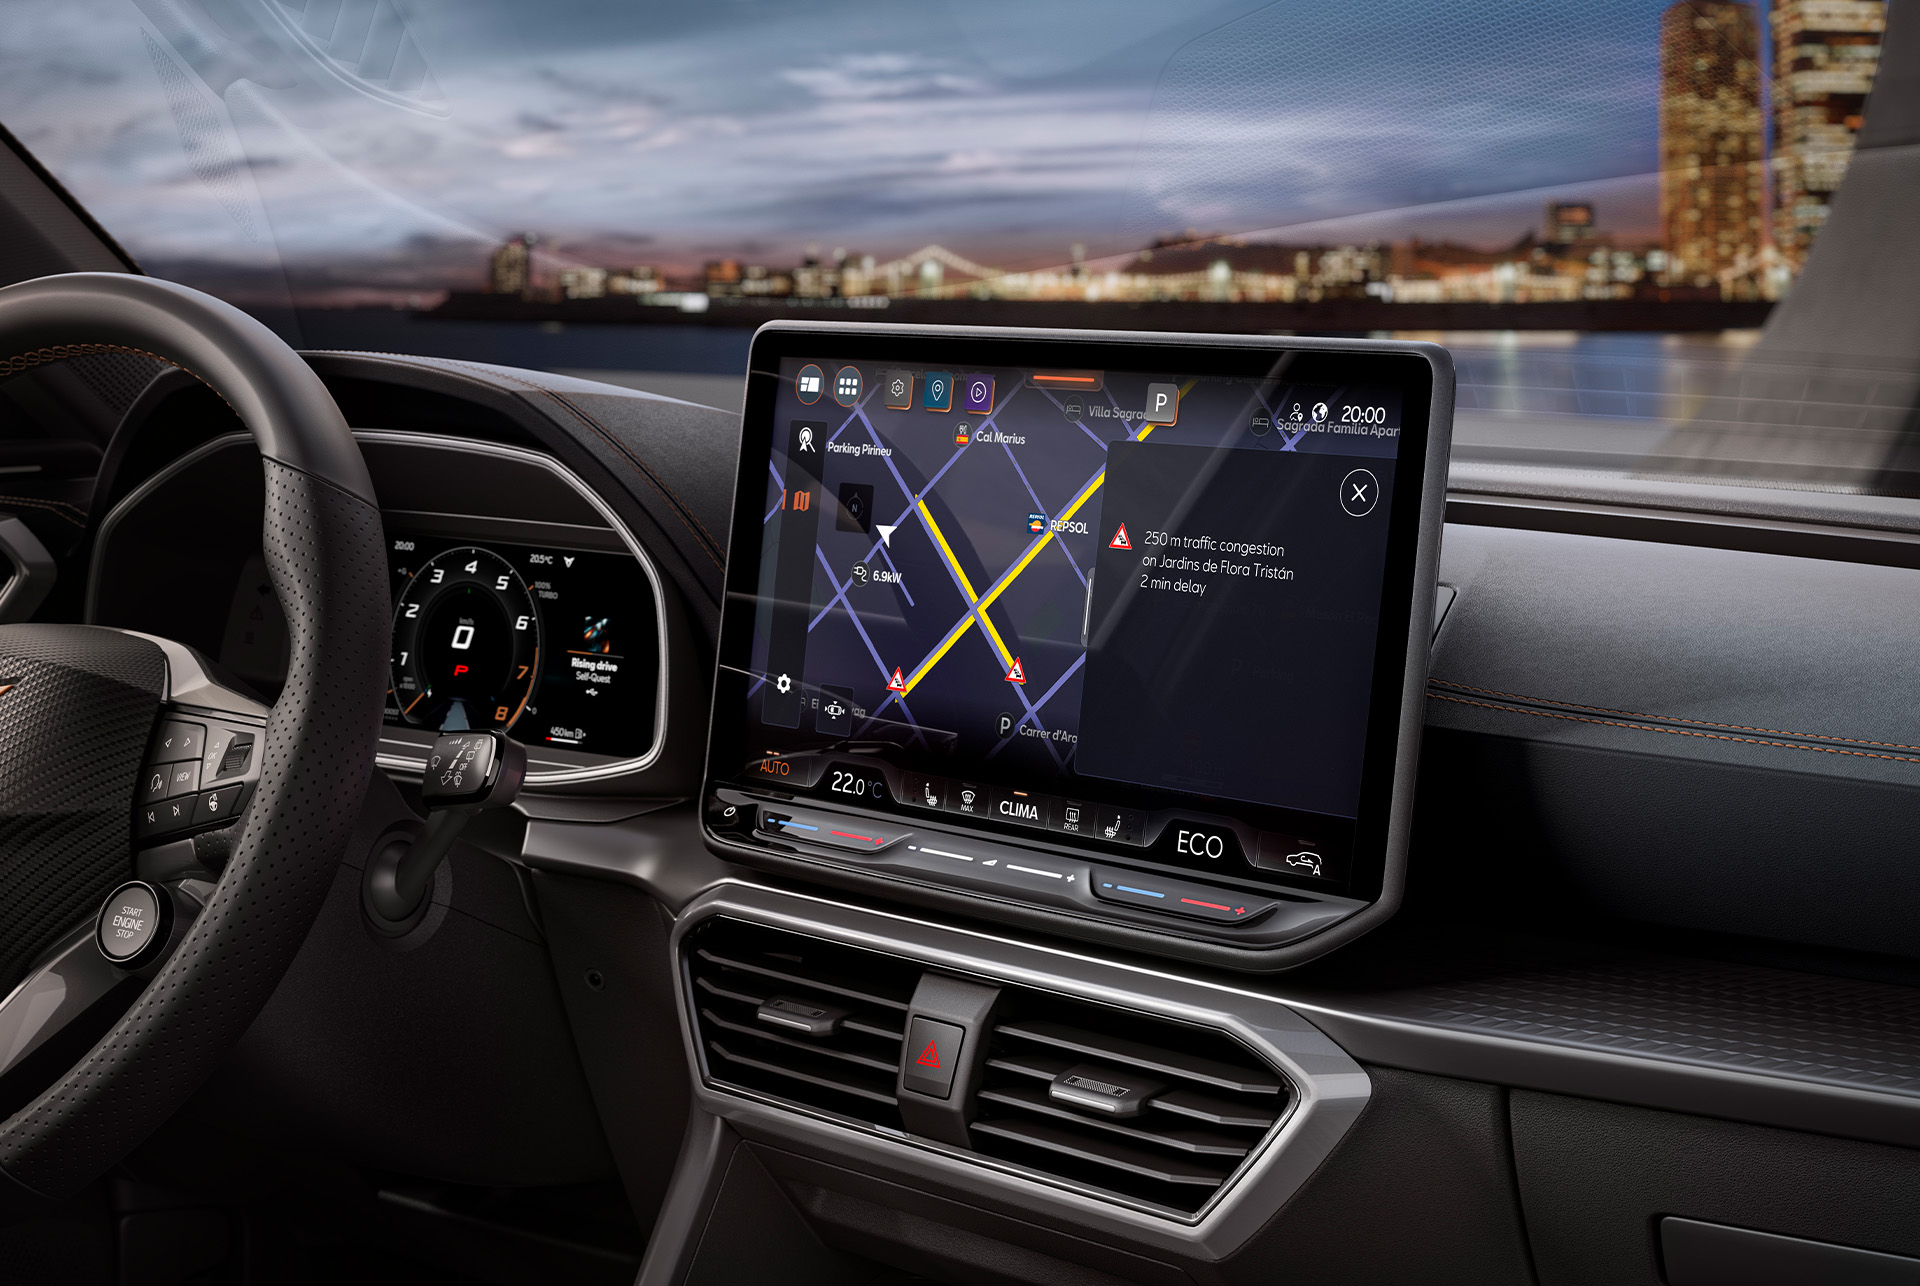 ekran informacyjno-rozrywkowy, kierownica, deska rozdzielcza i otwory wentylacyjne nowego pojazdu hybrydowego cupra leon 2024.